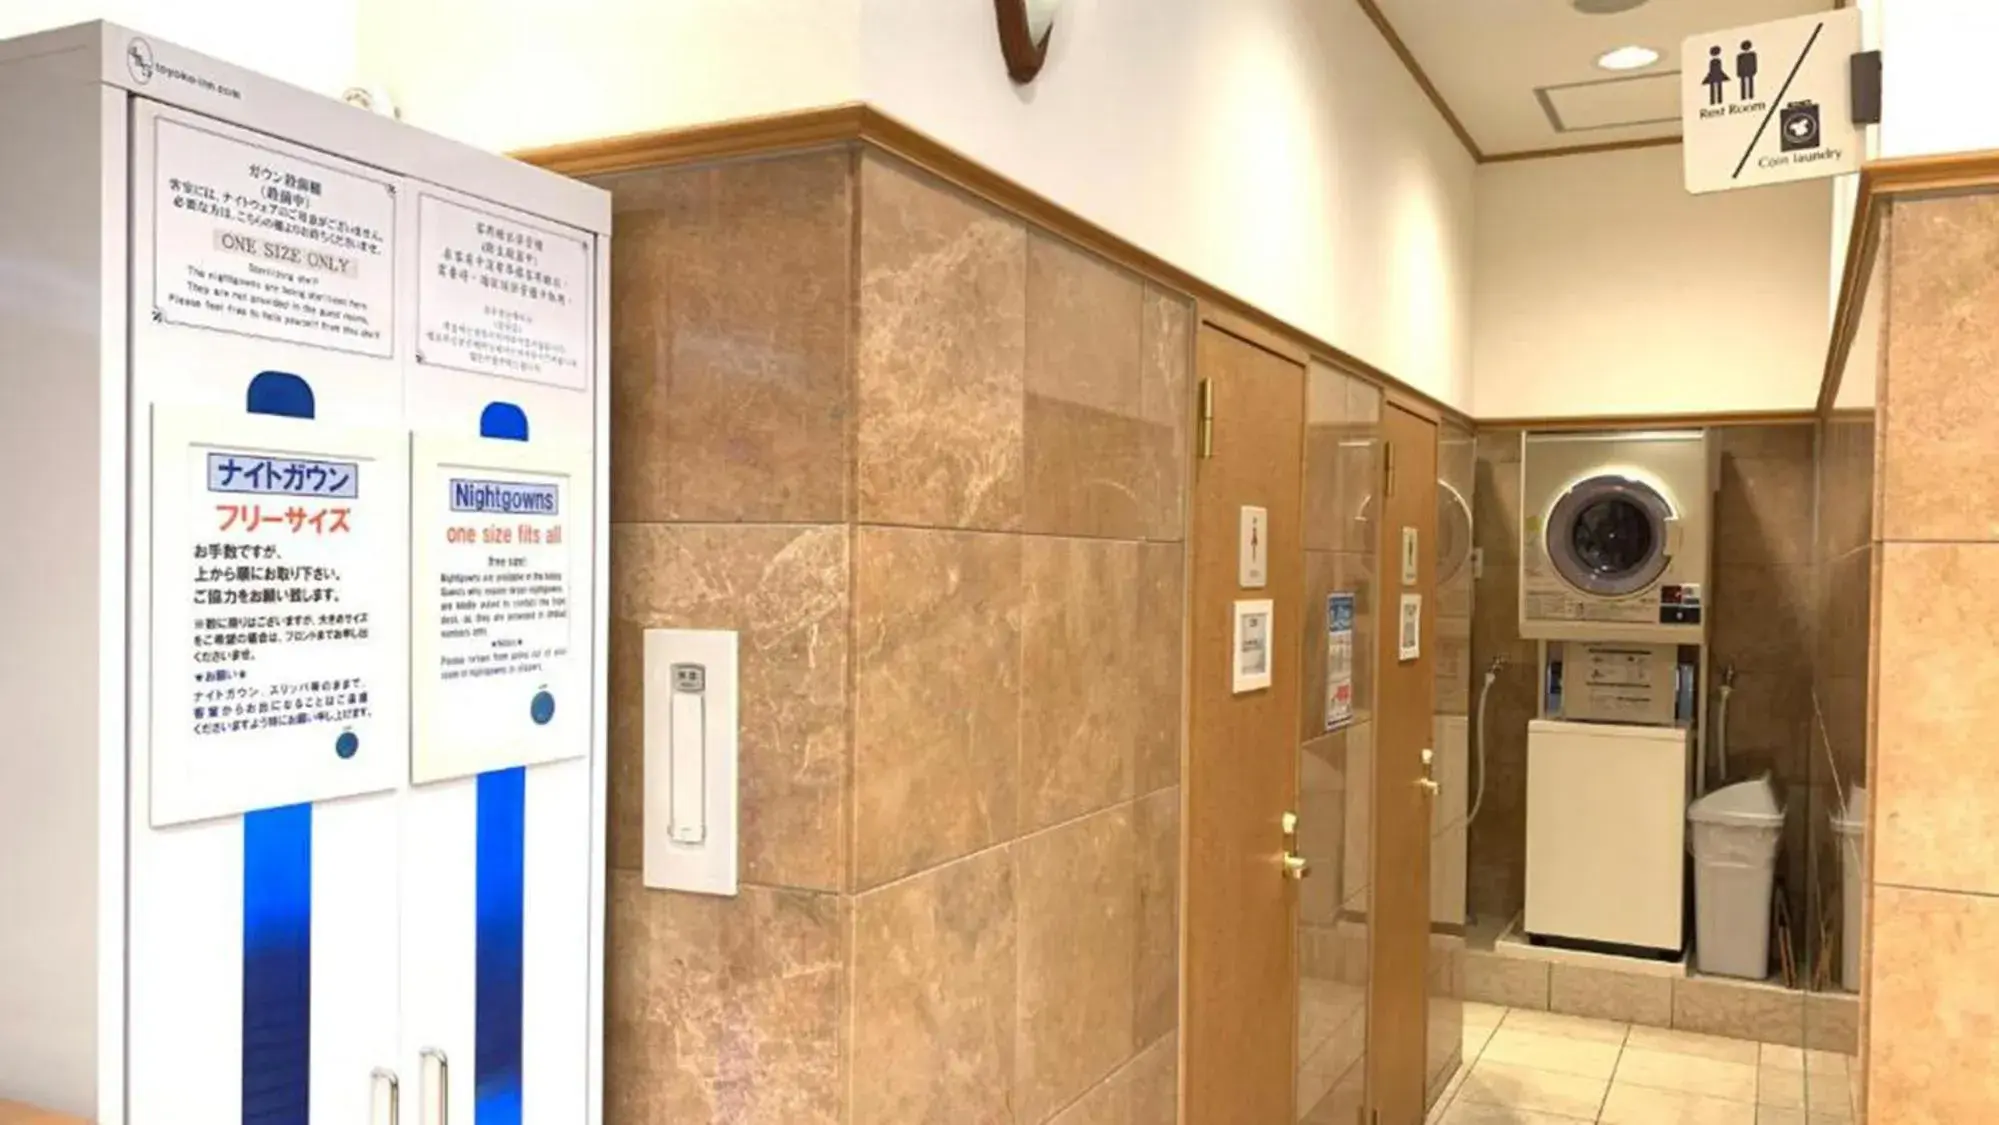 Area and facilities, Bathroom in Toyoko Inn Hakata Nishi-nakasu